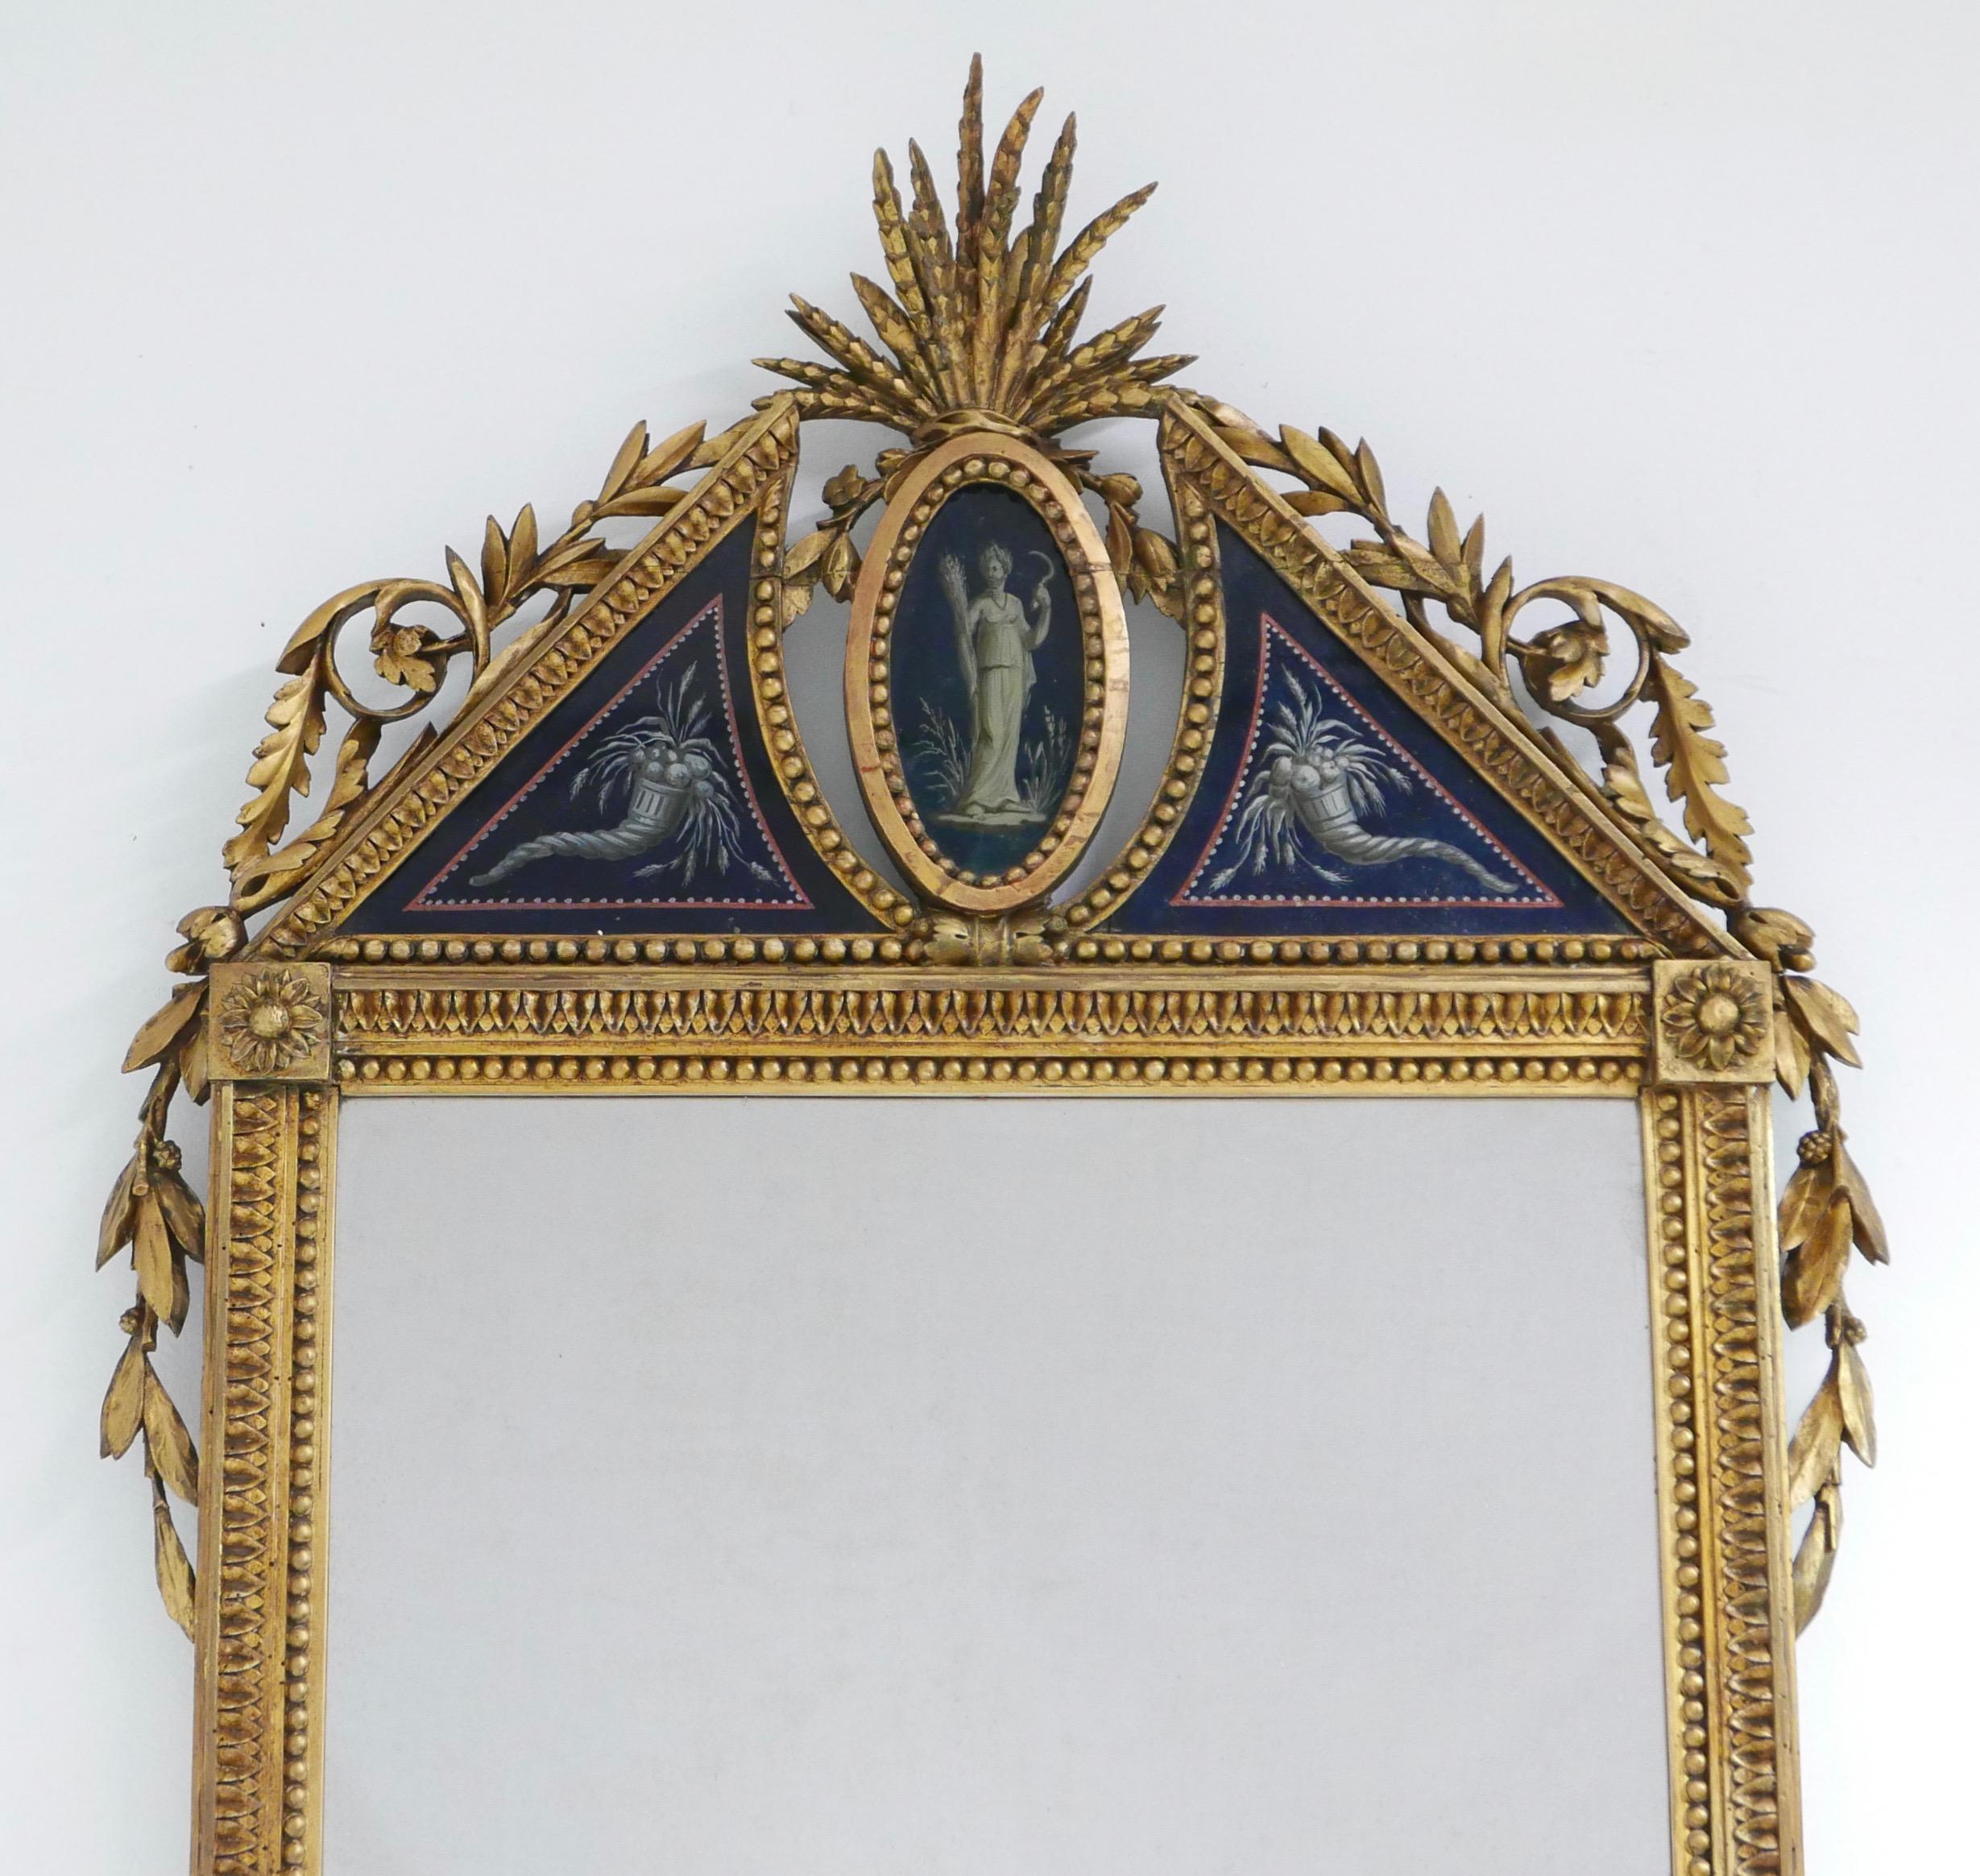 Ein prächtiger, kunstvoll geschnitzter und vergoldeter Spiegel mit einer Krone aus églomisé (rückseitig bemaltes Glas), die die griechische Göttin Demeter darstellt, flankiert von einem Paar Füllhörner.
Demeter ist die Göttin der Fruchtbarkeit, des